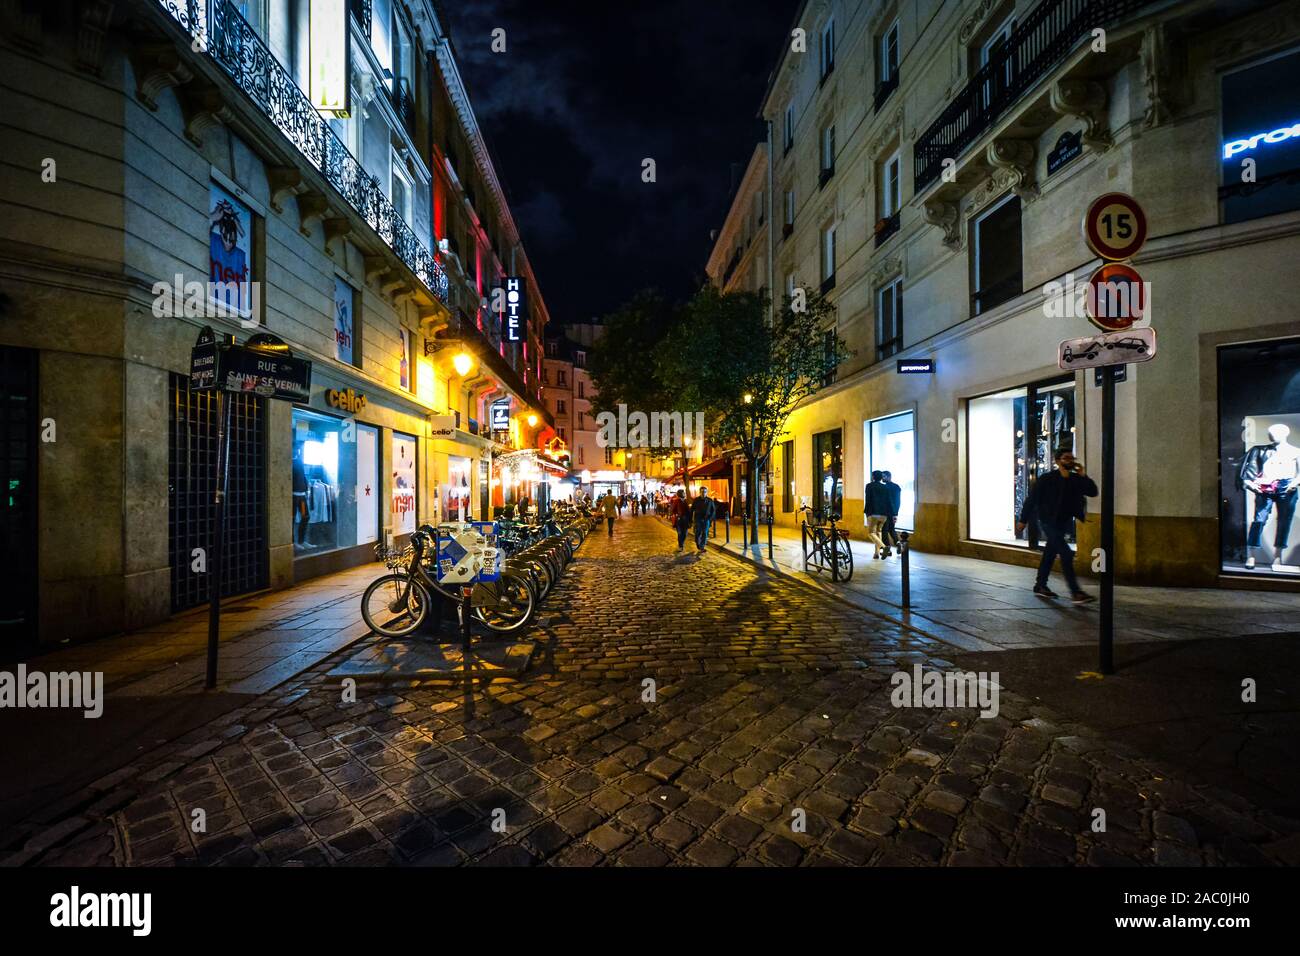 Les touristes profiter d'une fin de nuit à pied sur une rue animée colorée, illuminée par un café et boutique des lumières dans le quartier Latin de Paris, France. Banque D'Images